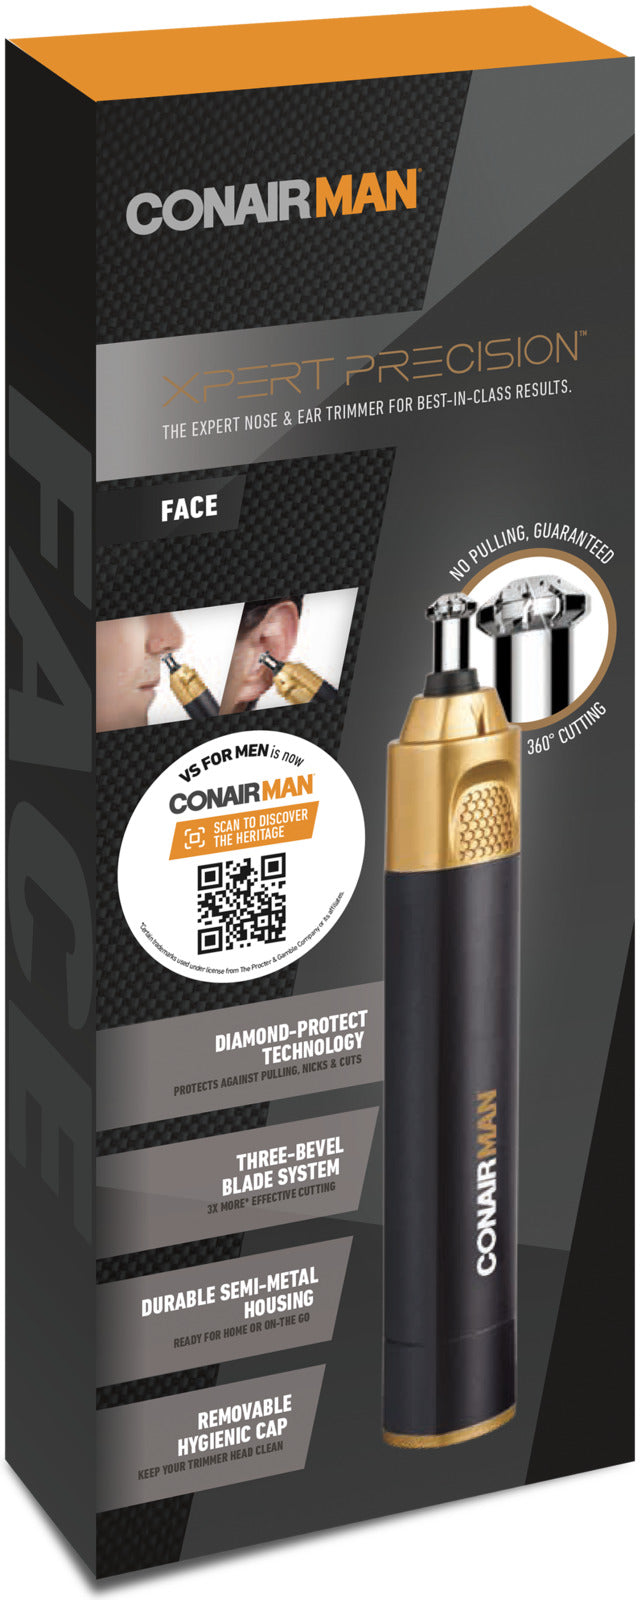 ConairMan: Xpert Precision Nose & Ear Trimmer